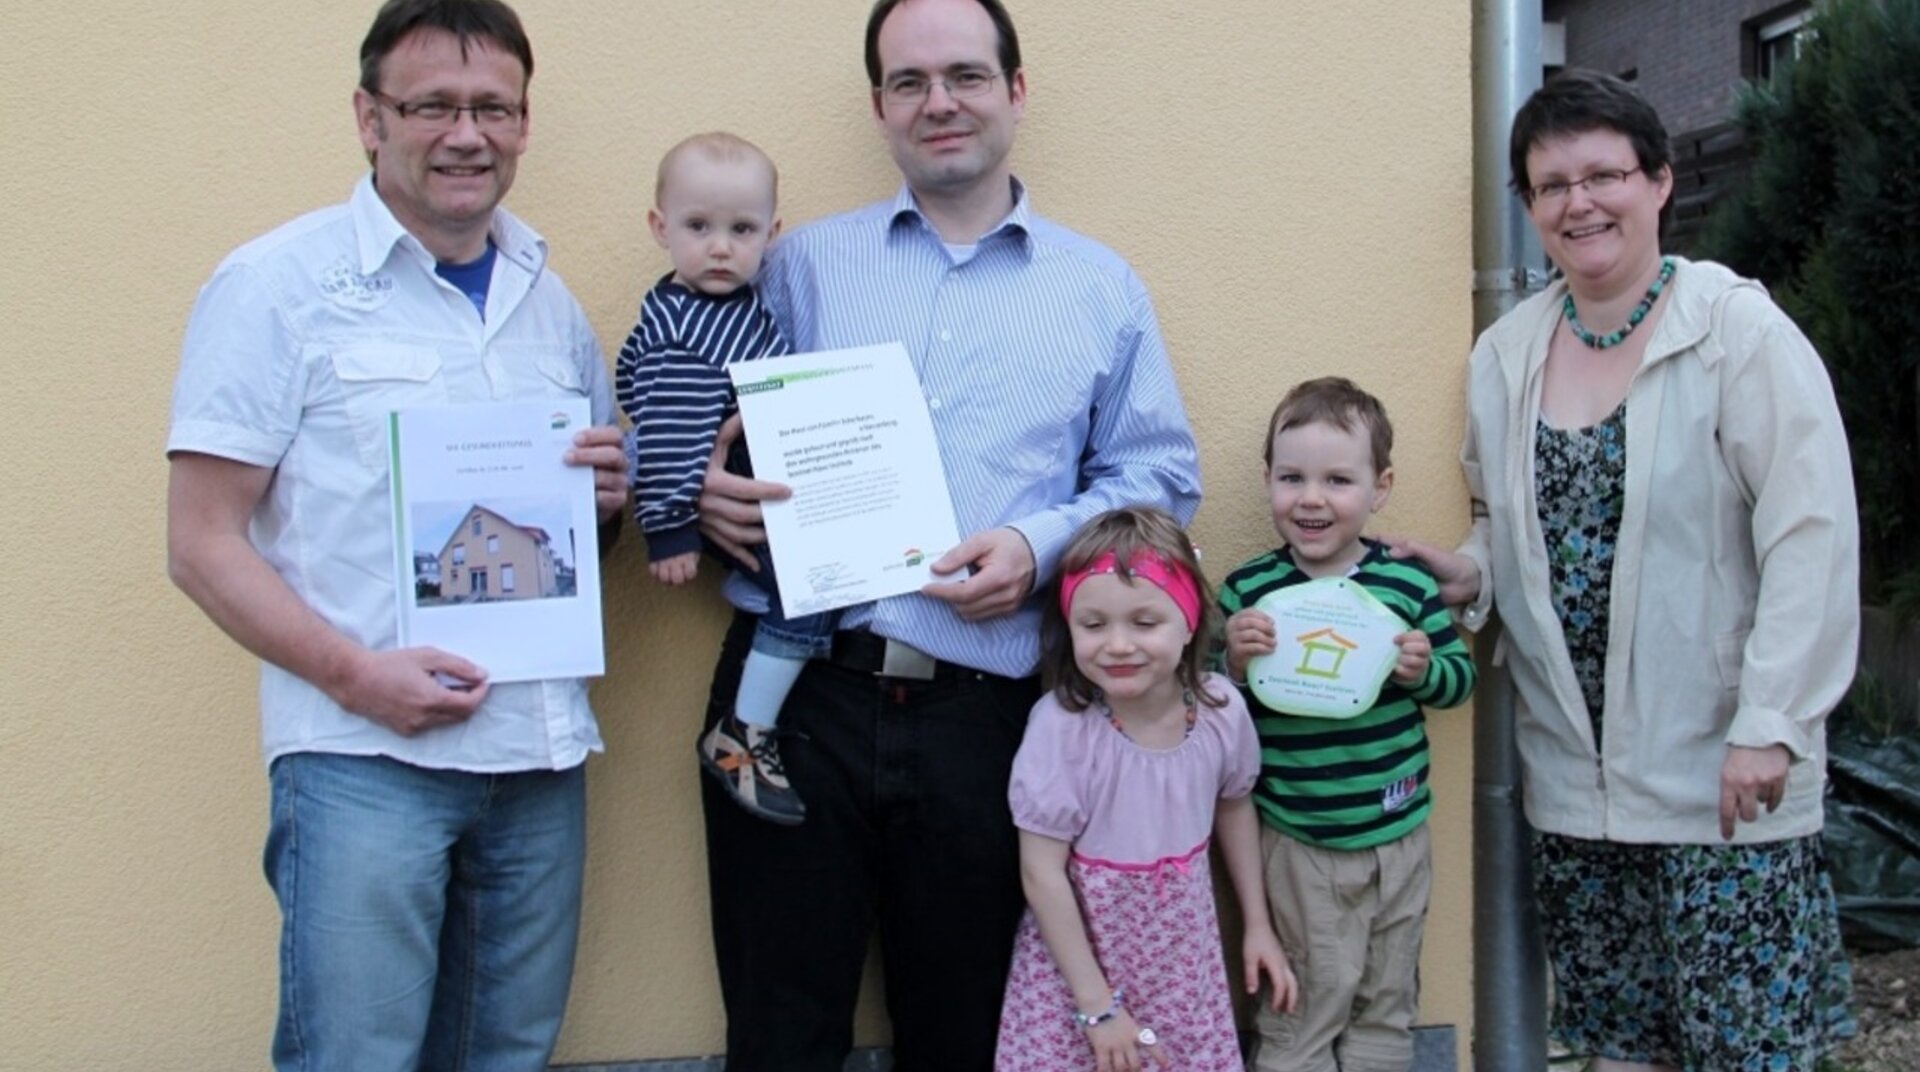 Gaia Nuova EFH Herrenberg, sechs Personen, Übergabe Zertifikat, Familie mit drei Kindern